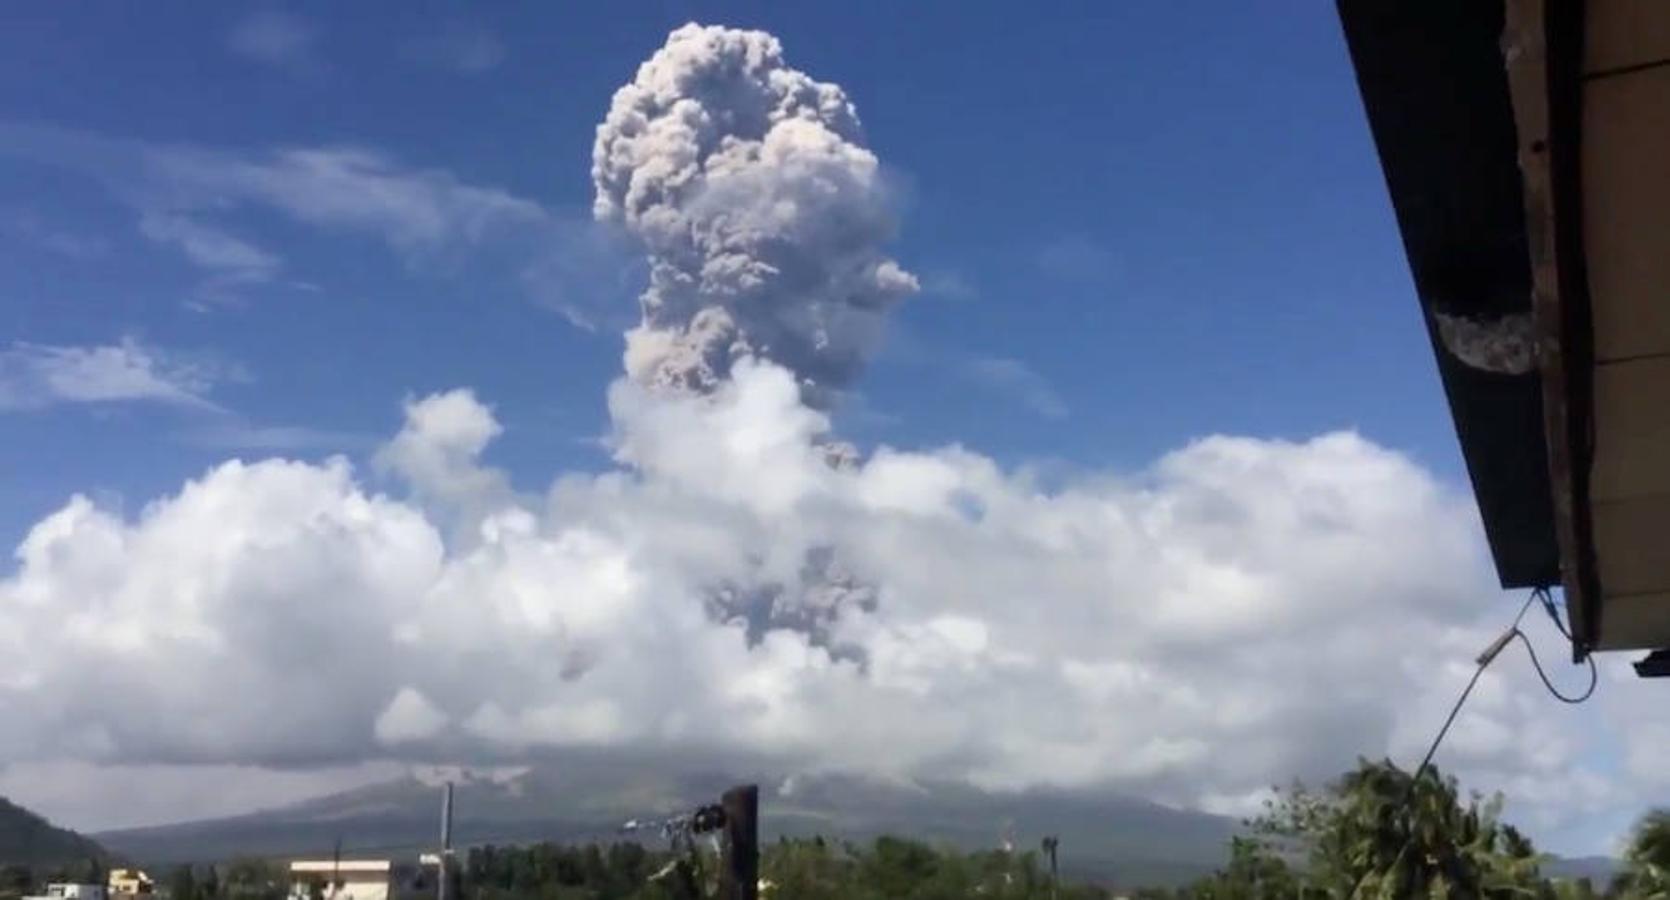 La erupción de tres volcanes en el cinturón del Pacífico ha puesto en alerta a Filipinas, Papua, Indonesia y Nueva Guinea shanghái. El 75% de los volcanes y el 90% de los terremotos del planeta se concentran en el Círculo de Fuego del océano Pacífico.